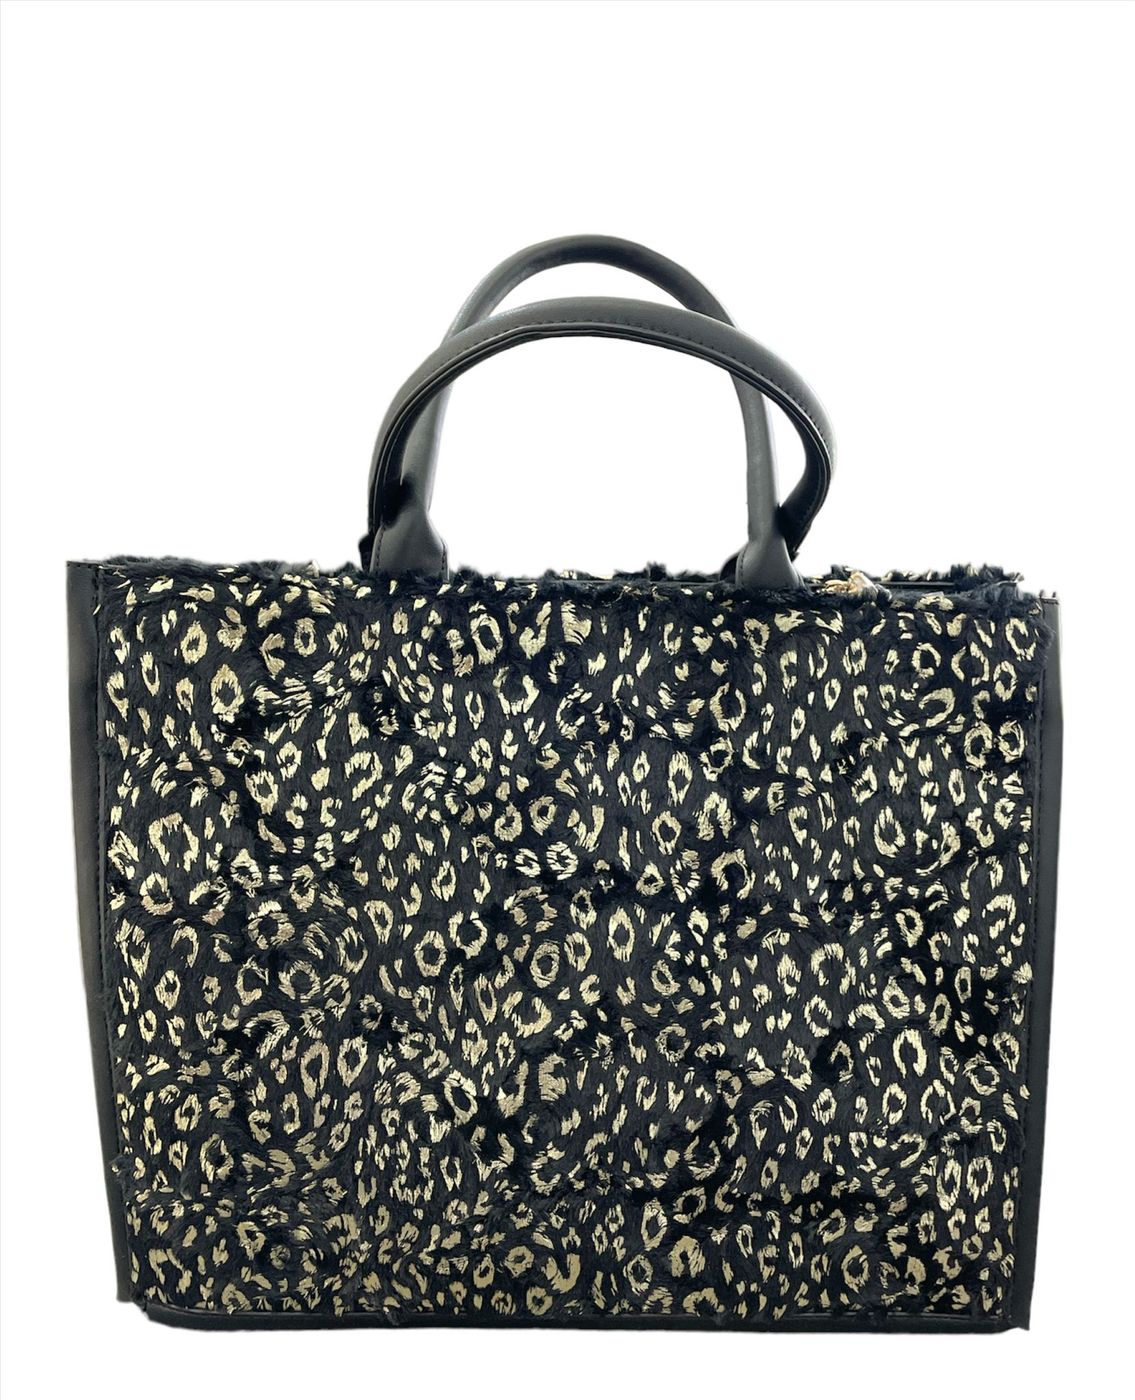 Shop Art Shopping Bag con Logo Frontale Outlet Donna Borsa